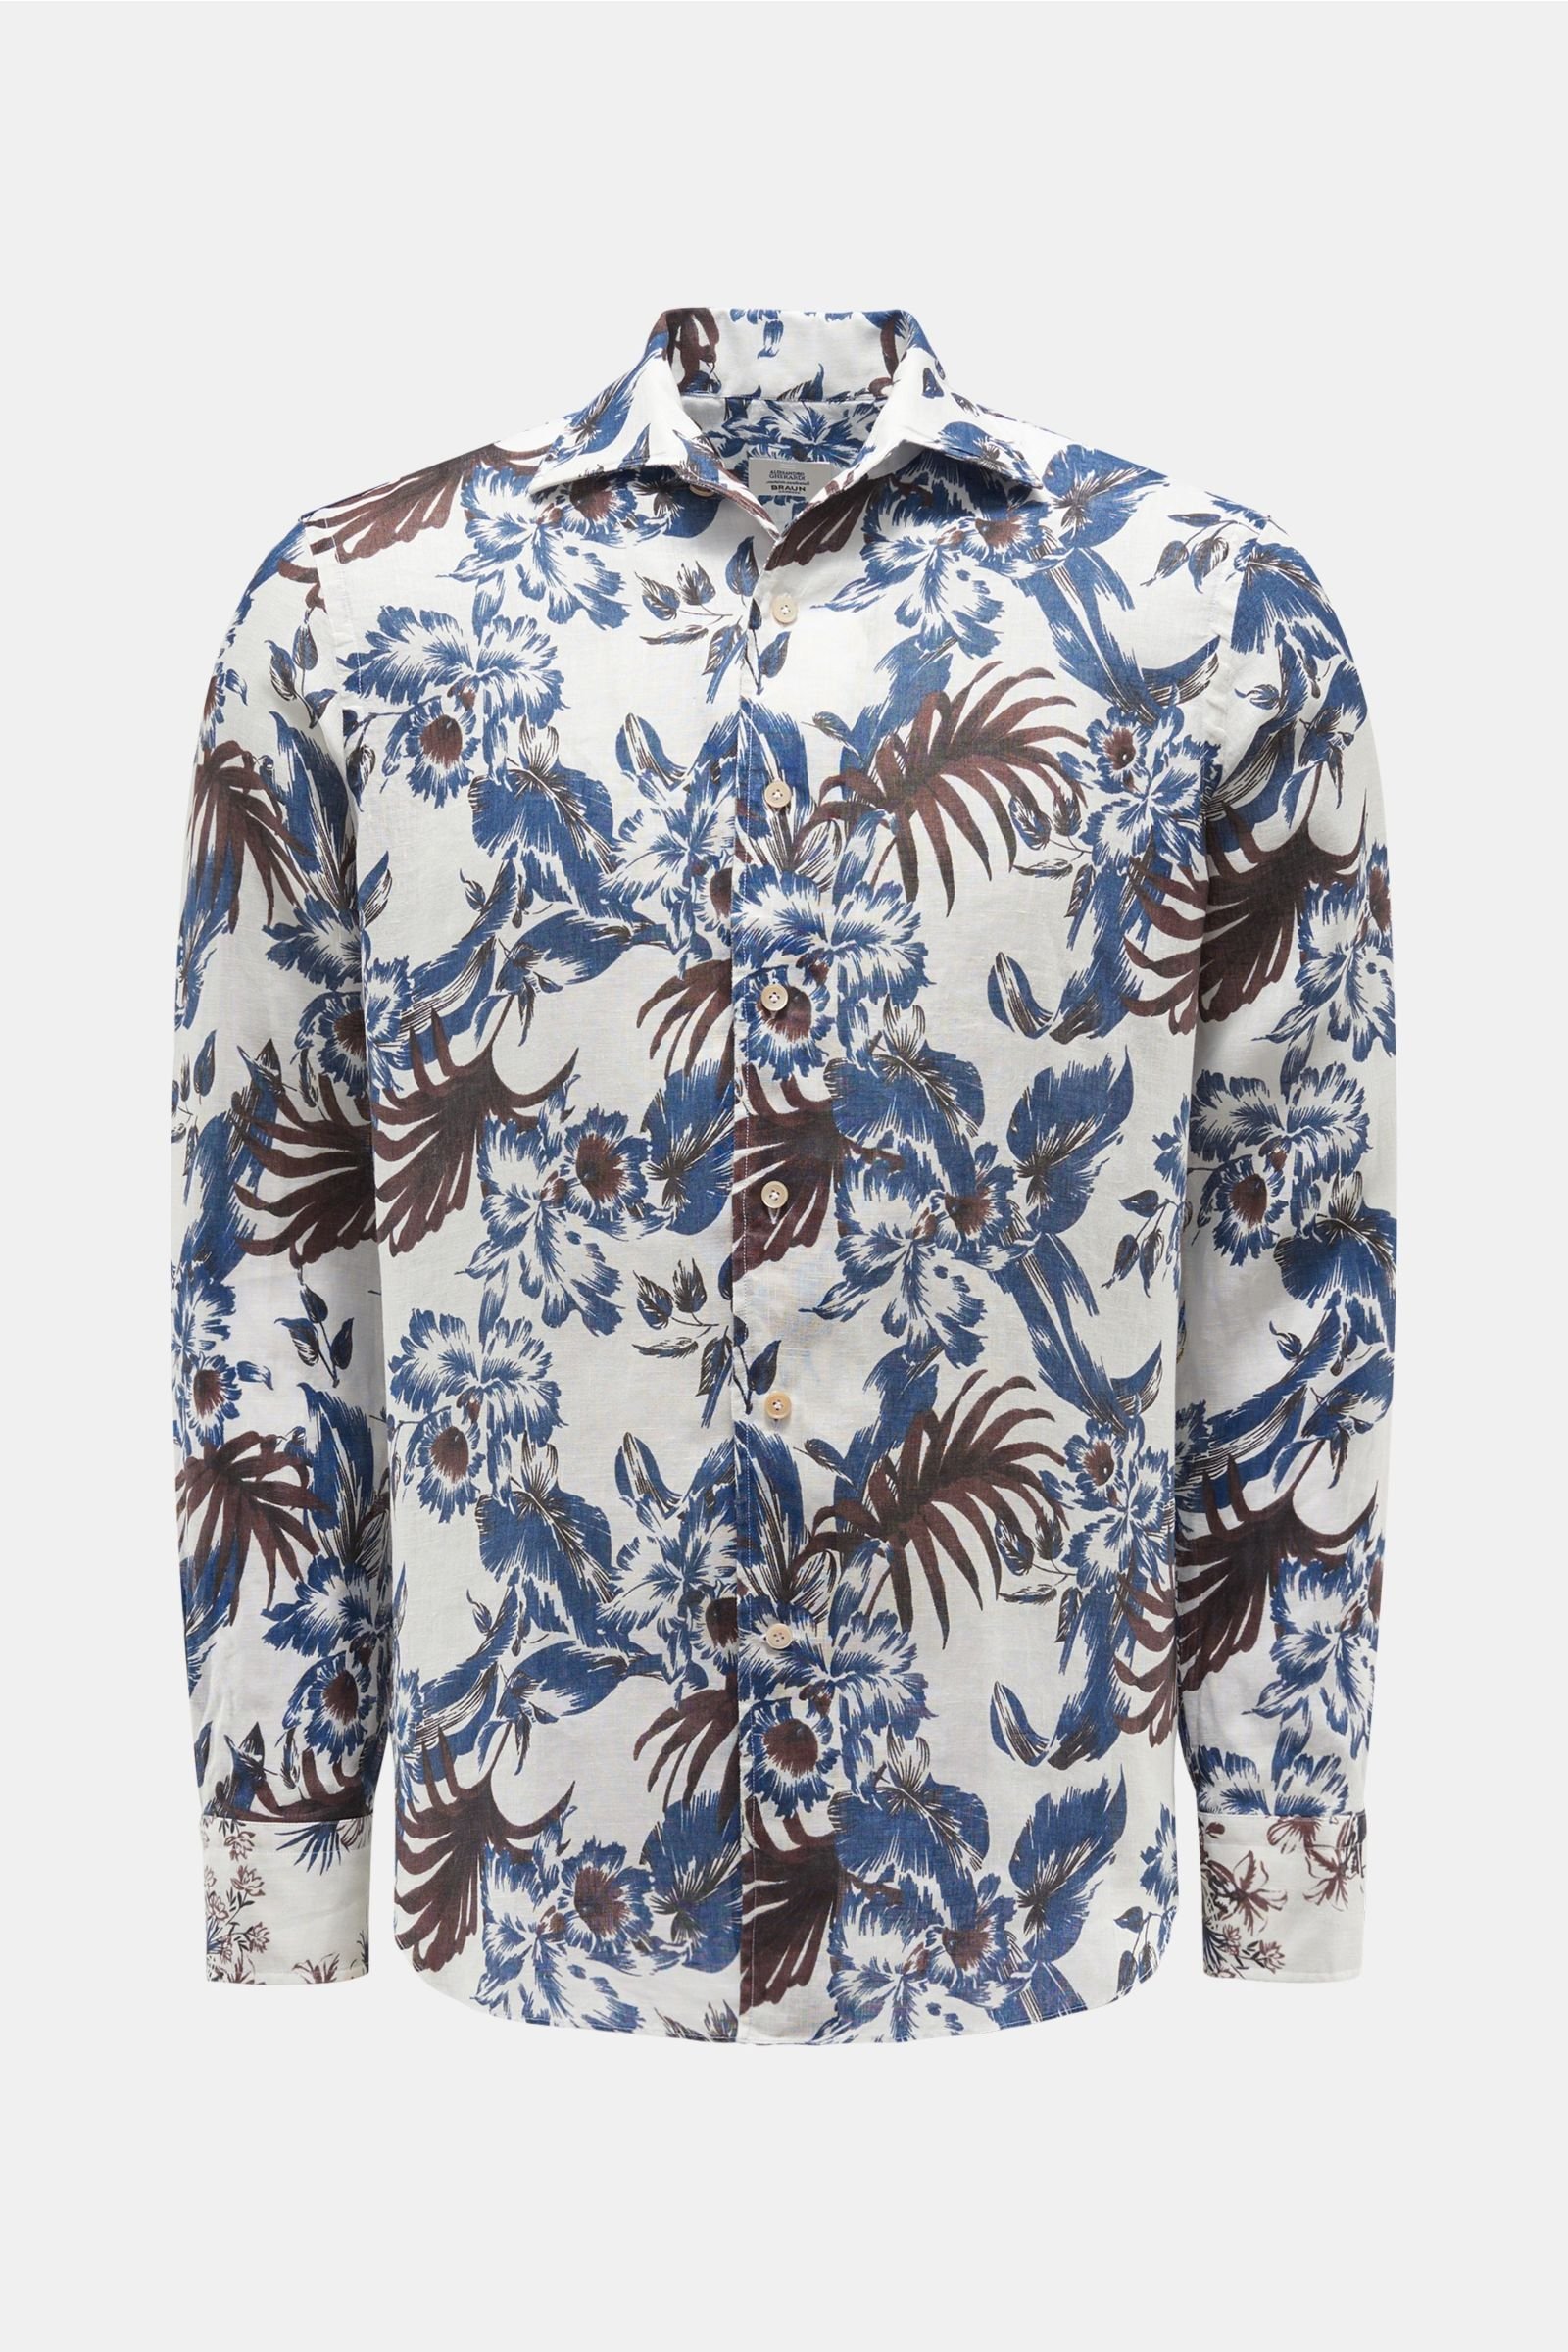 Linen shirt shark collar navy/white patterned